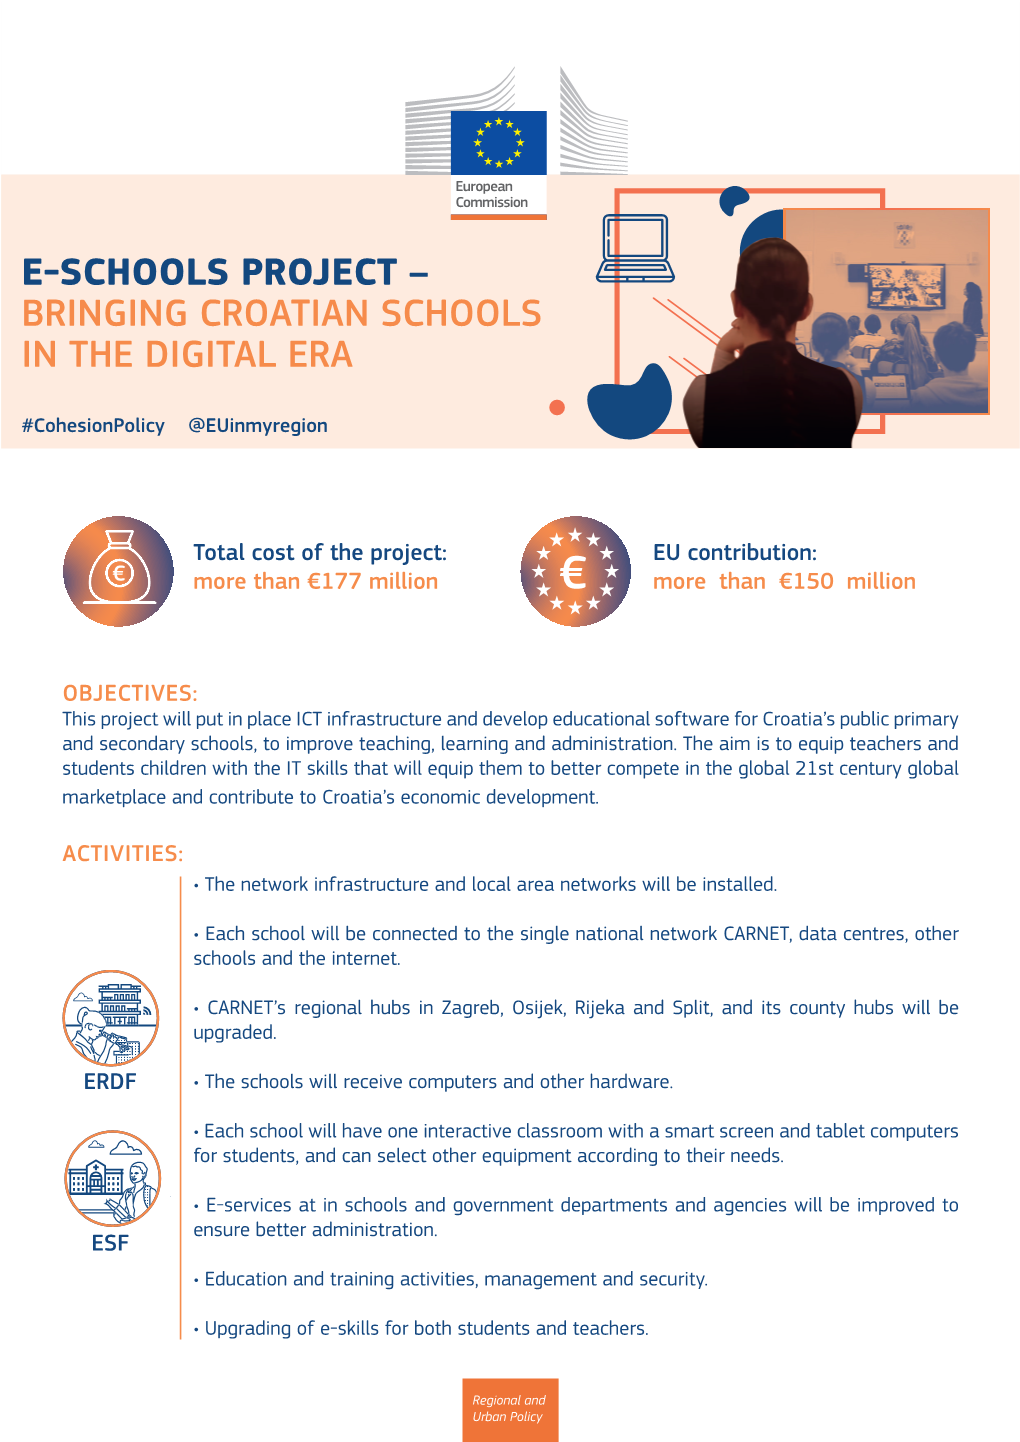 E-Schools Project – Bringing Croatian Schools in the Digital Era